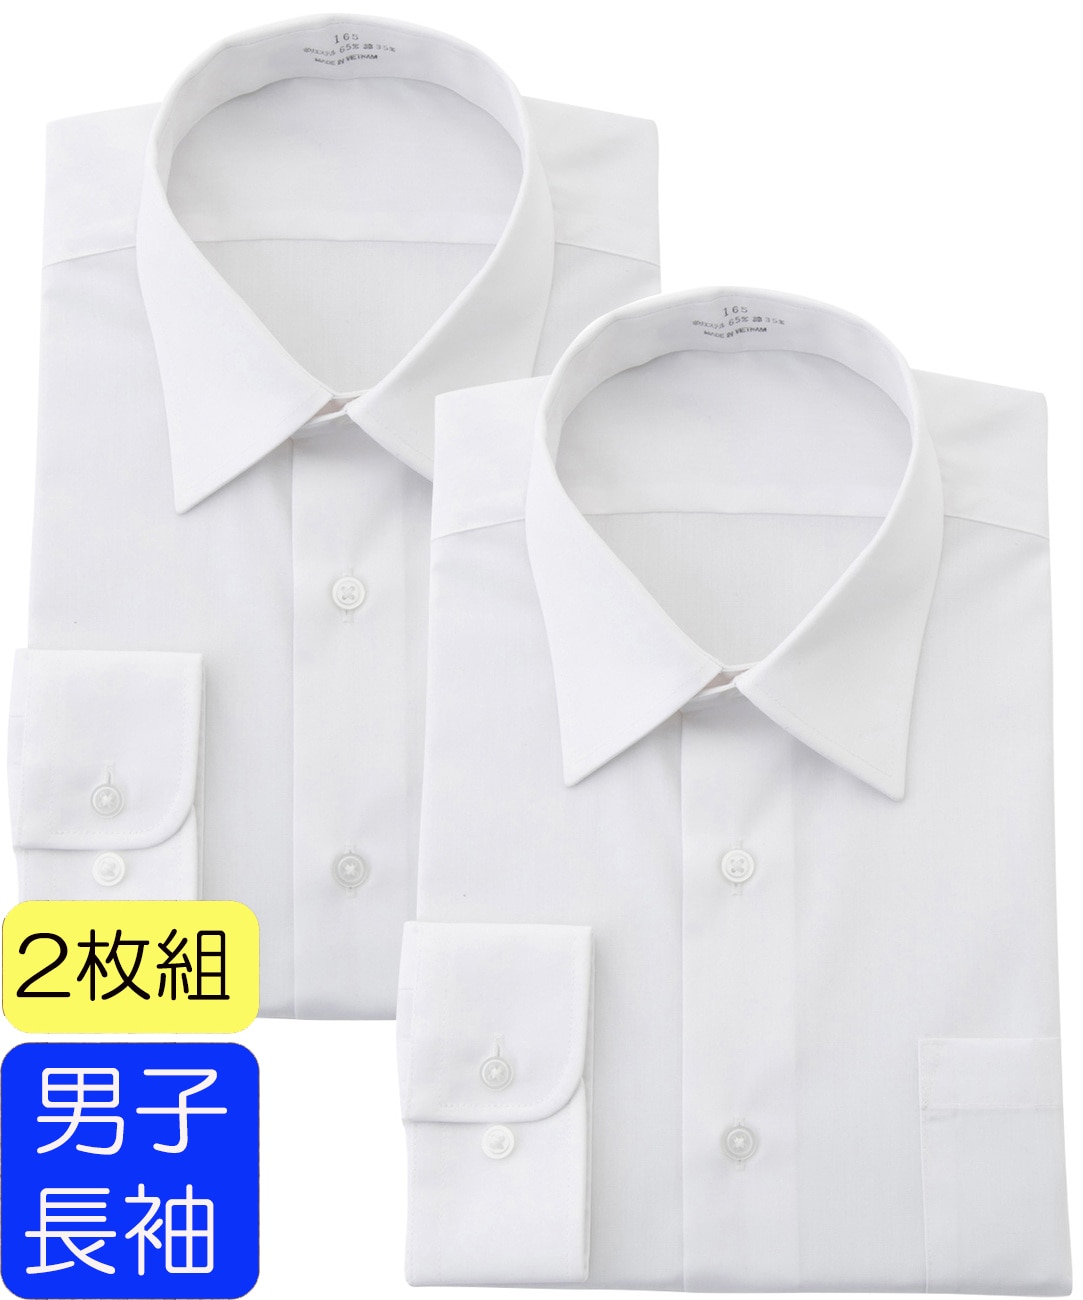 WEB限定商品】男子学生用スクールワイシャツ 2枚セット 【スーツの 